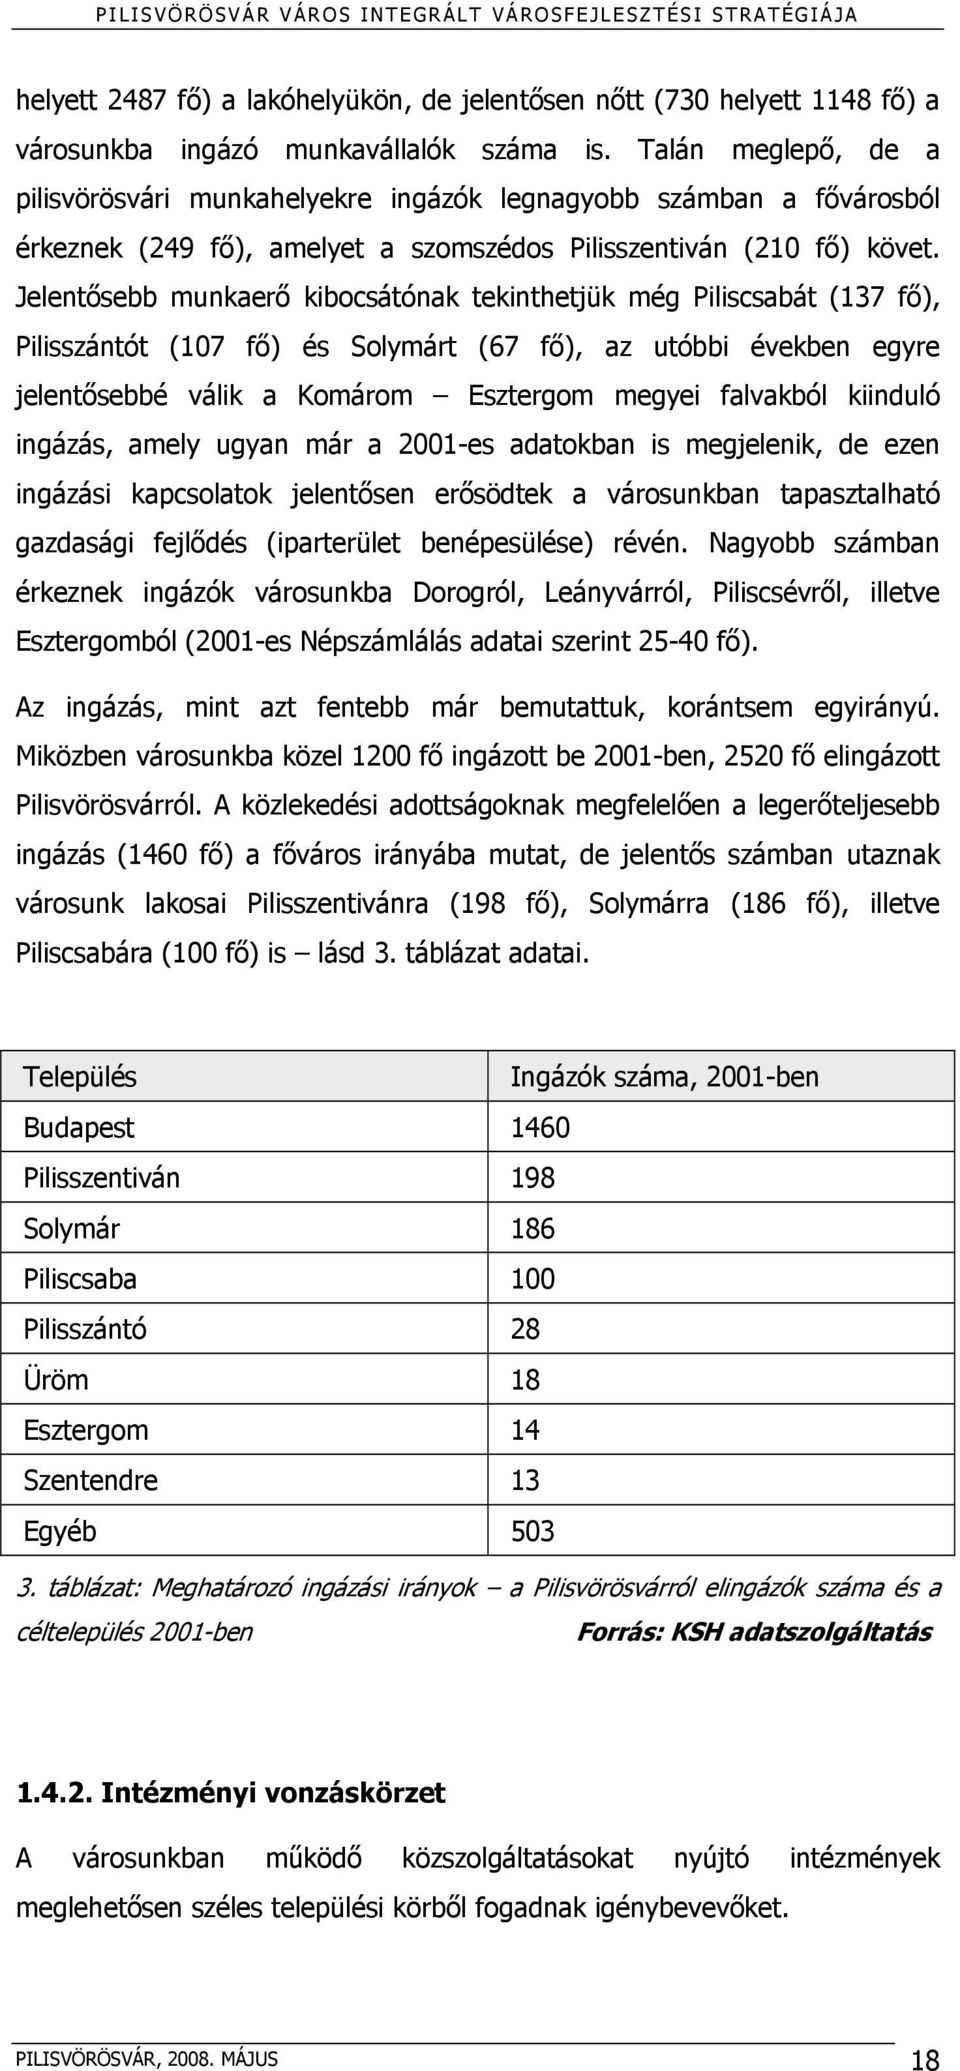 Jelentősebb munkaerő kibocsátónak tekinthetjük még Piliscsabát (137 fő), Pilisszántót (107 fő) és Solymárt (67 fő), az utóbbi években egyre jelentősebbé válik a Komárom Esztergom megyei falvakból